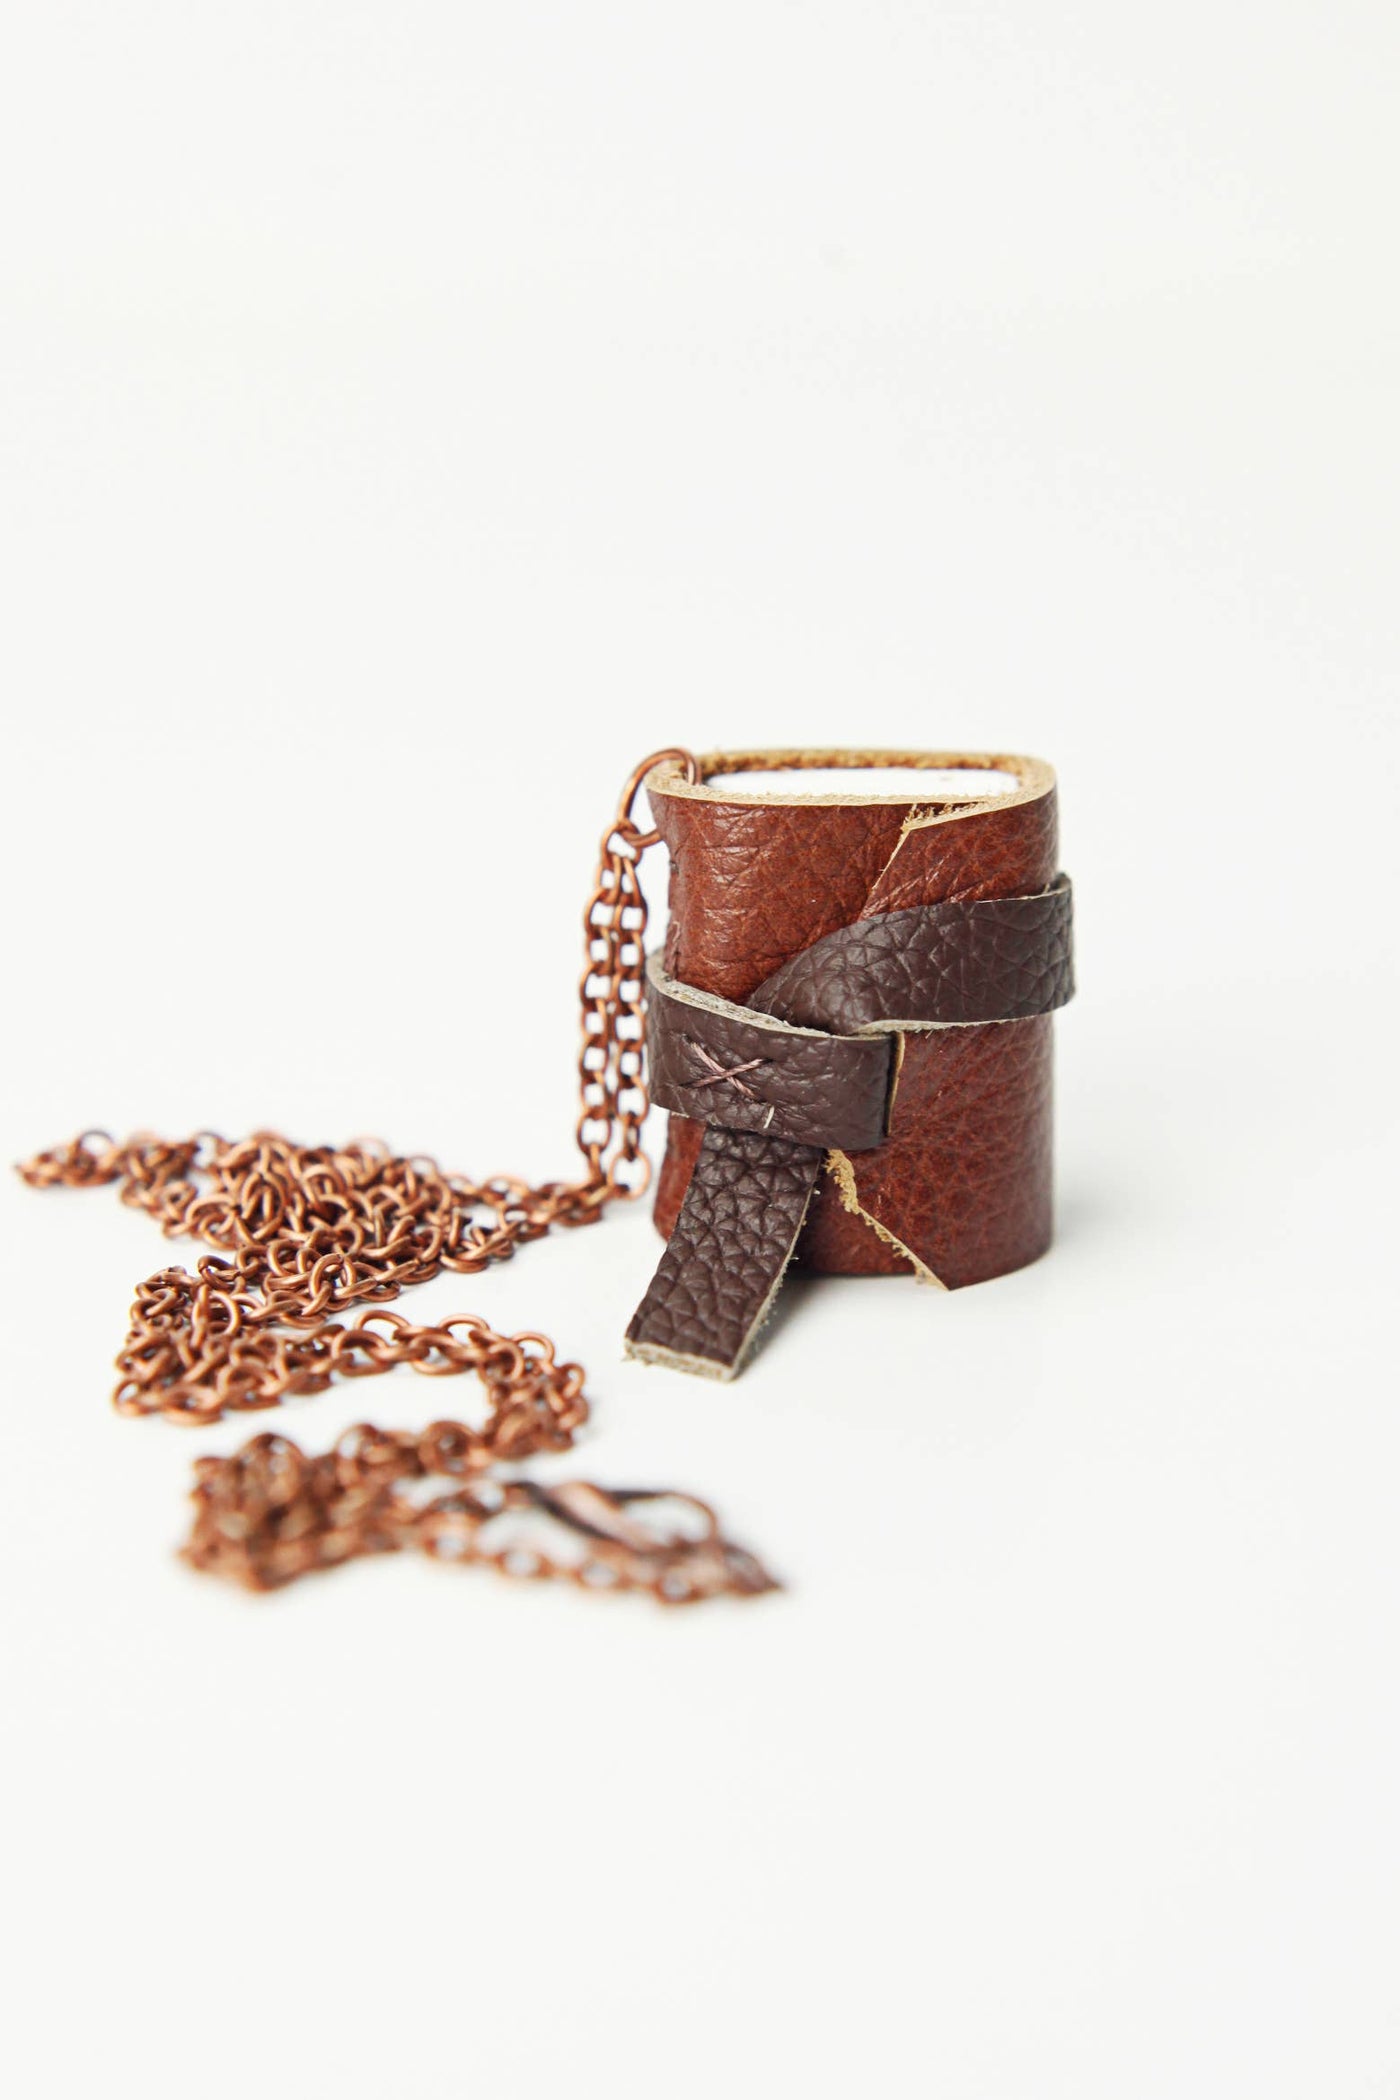 Mini Leather Journal Necklace: Copper / Bright White